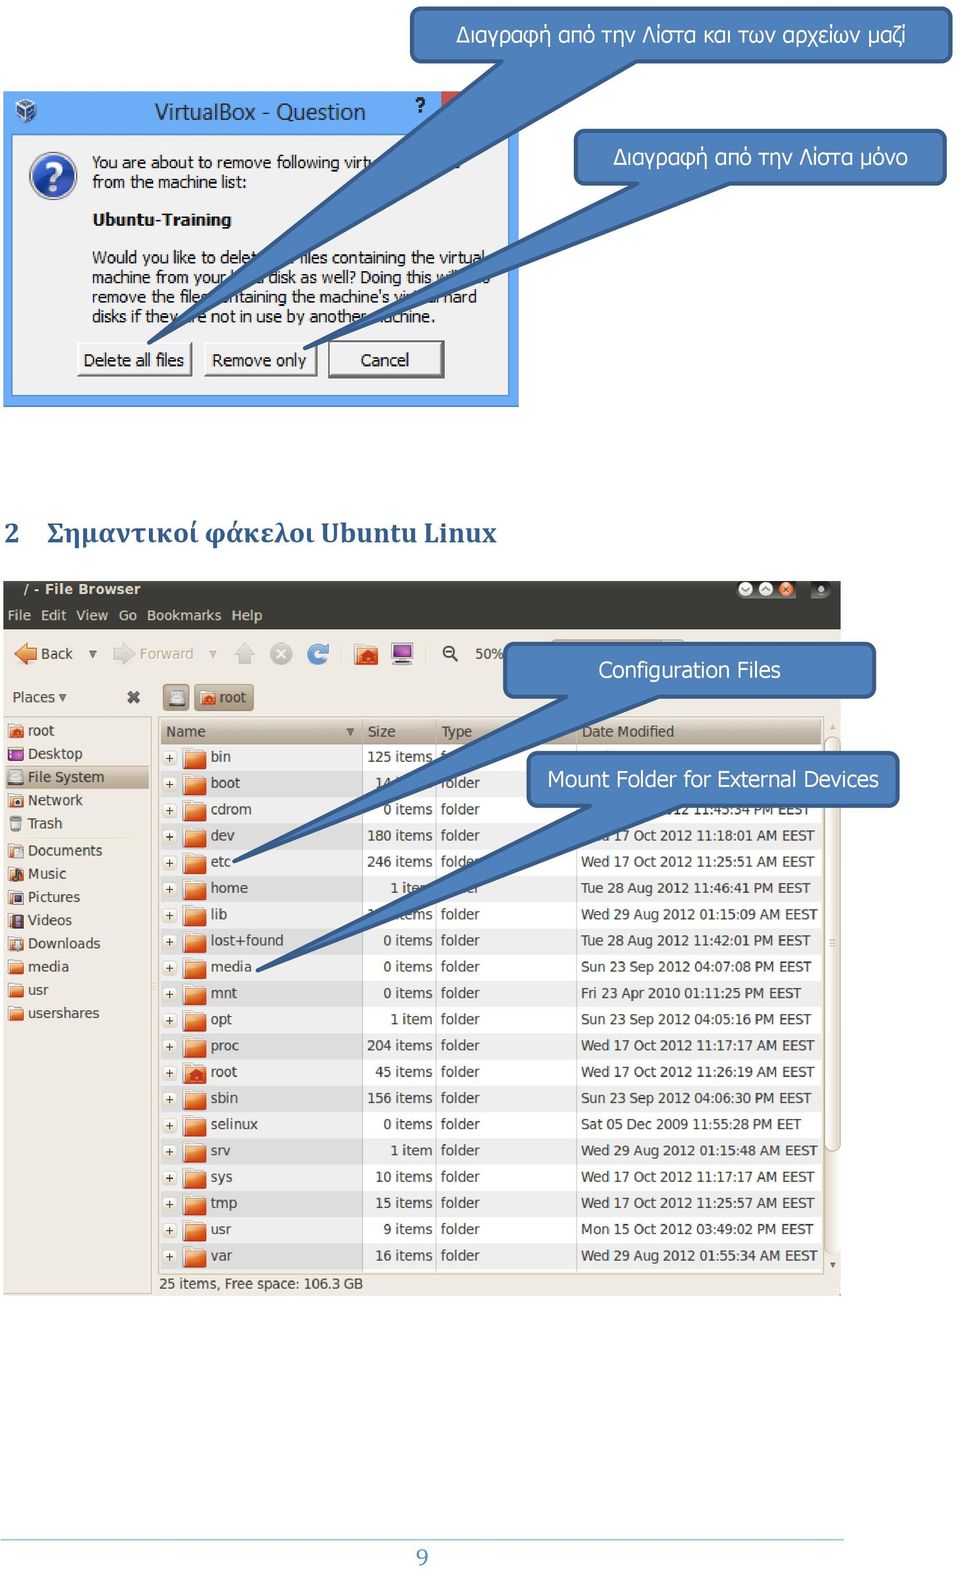 Σημαντικοί φάκελοι Ubuntu Linux